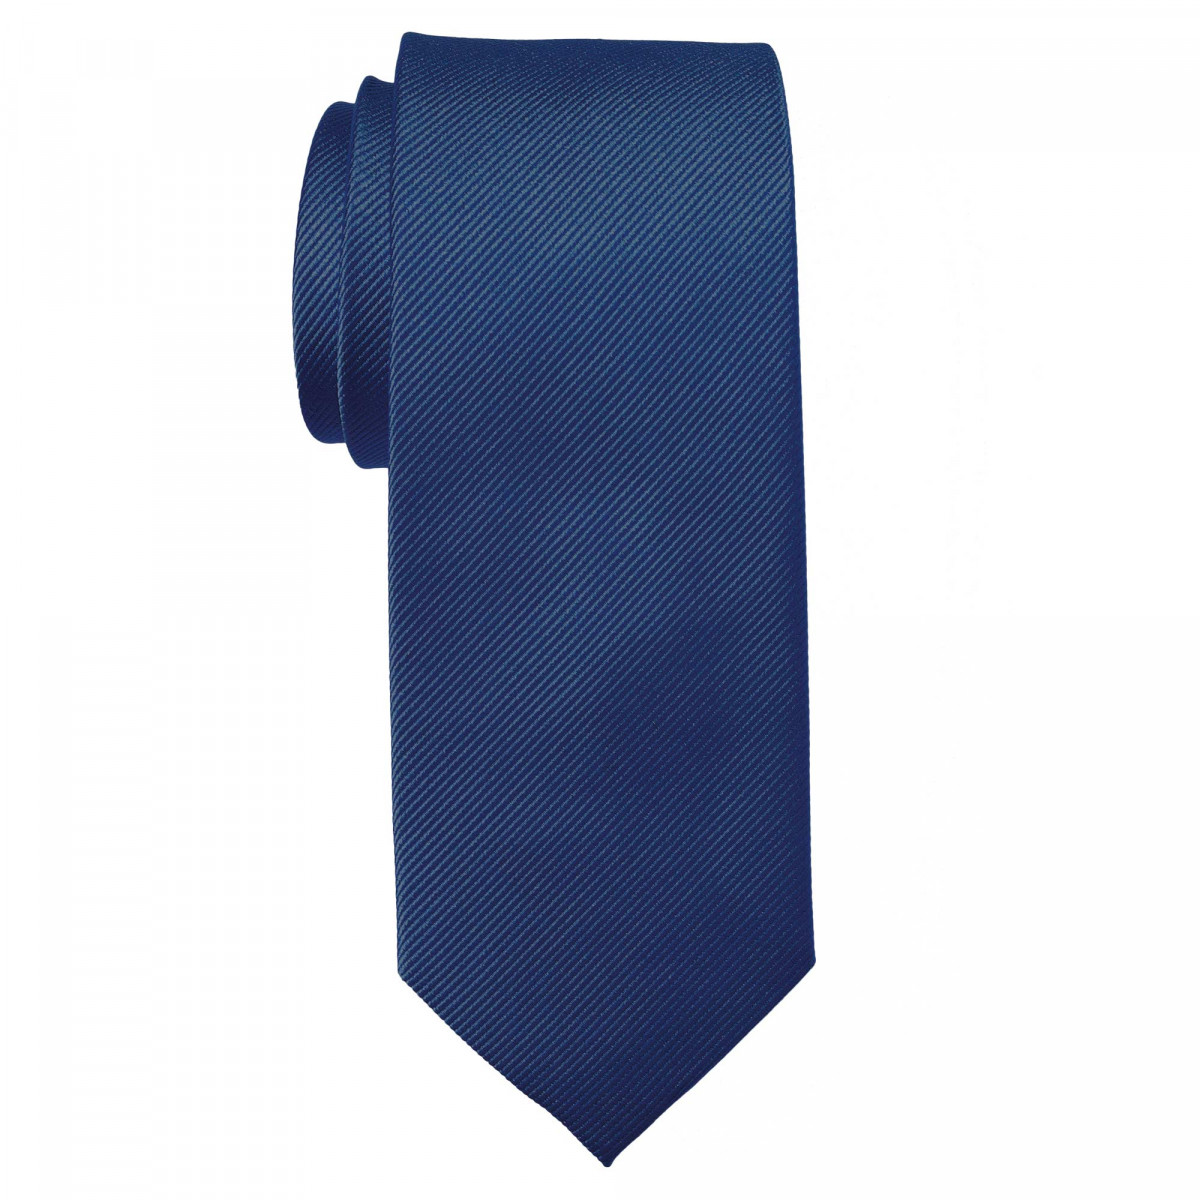 Cravate unie - Soie Bleu royal